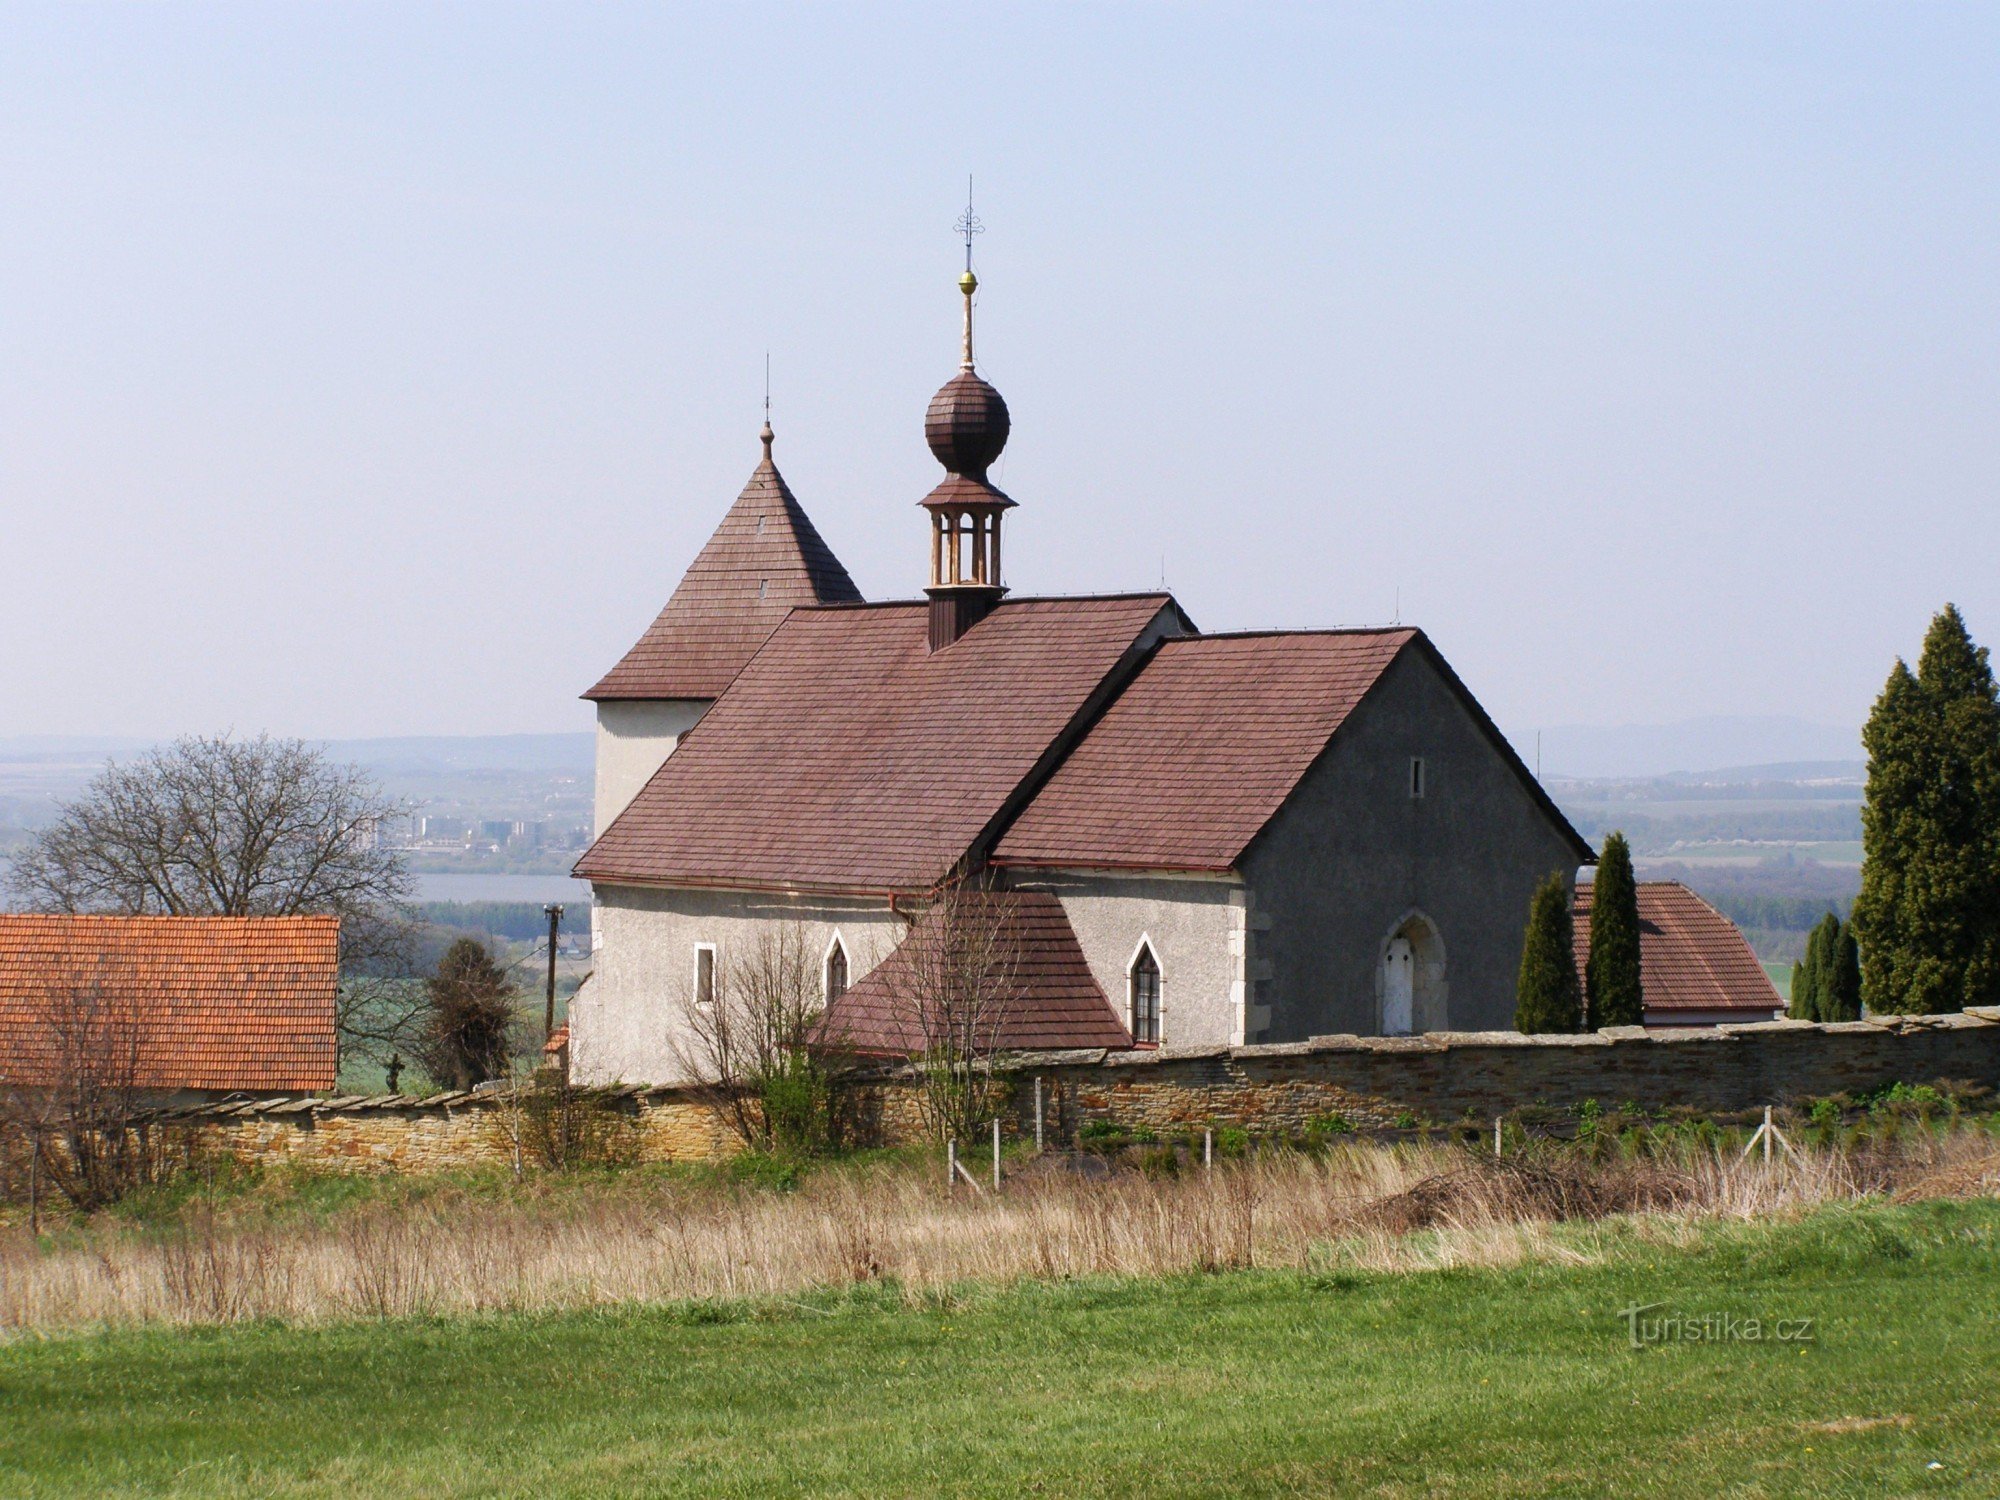 Václavice - igreja de St. Venceslau com o campanário